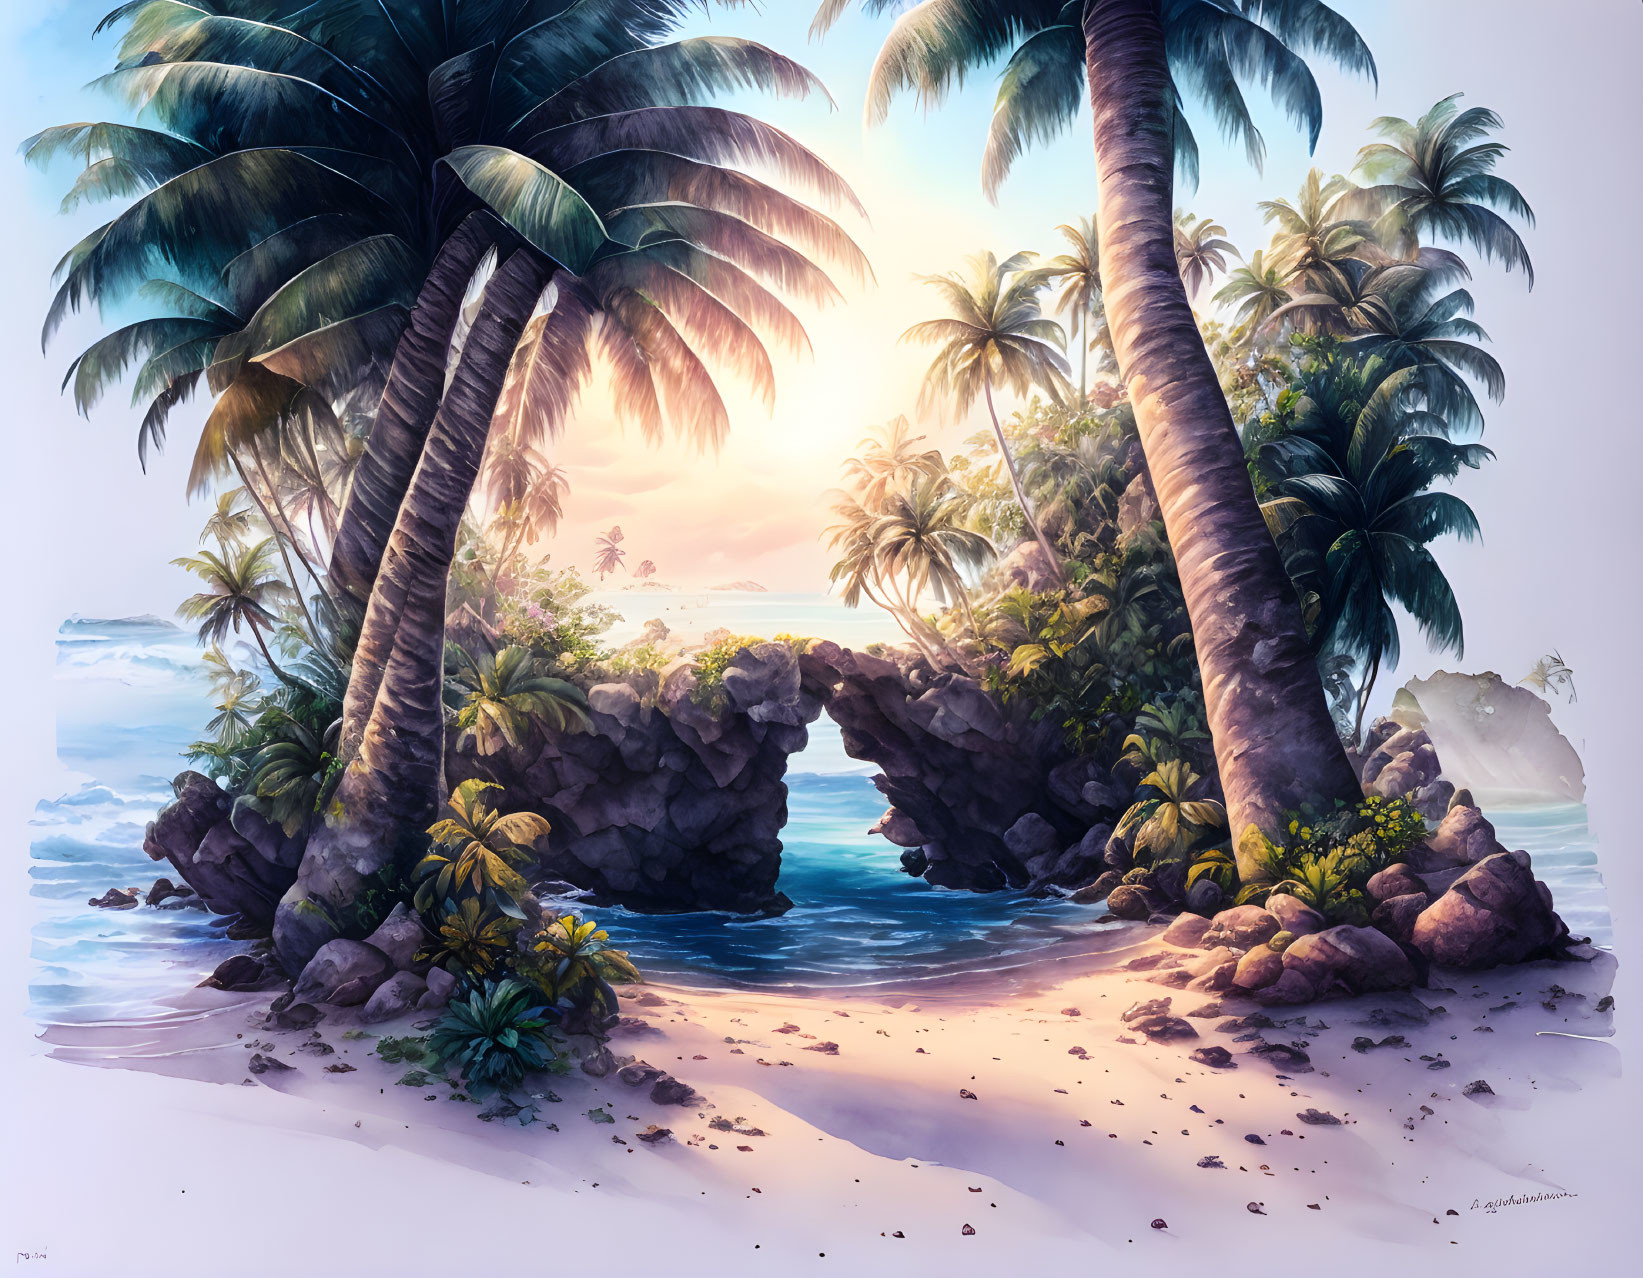 A tropical beach